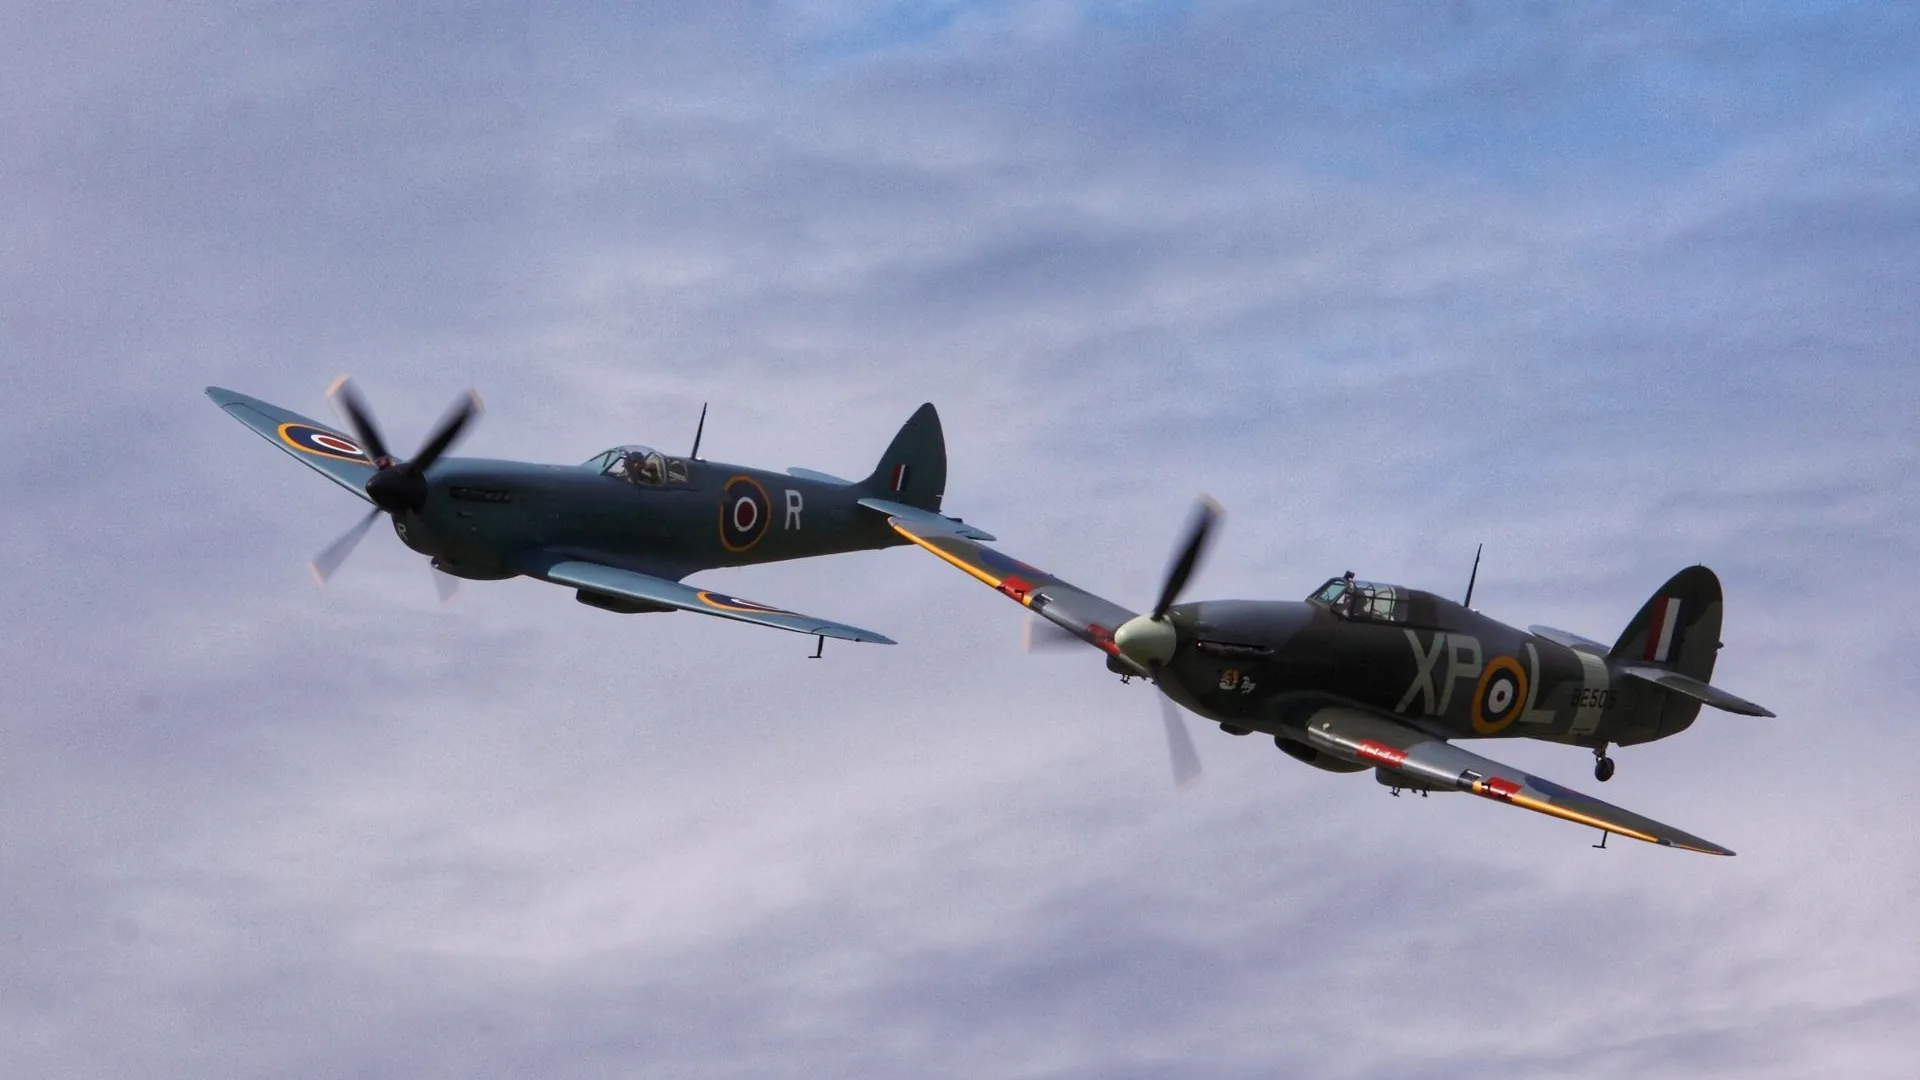 Энтузиасты начали скупать в Британии истребители Spitfire времен Второй мировой войны